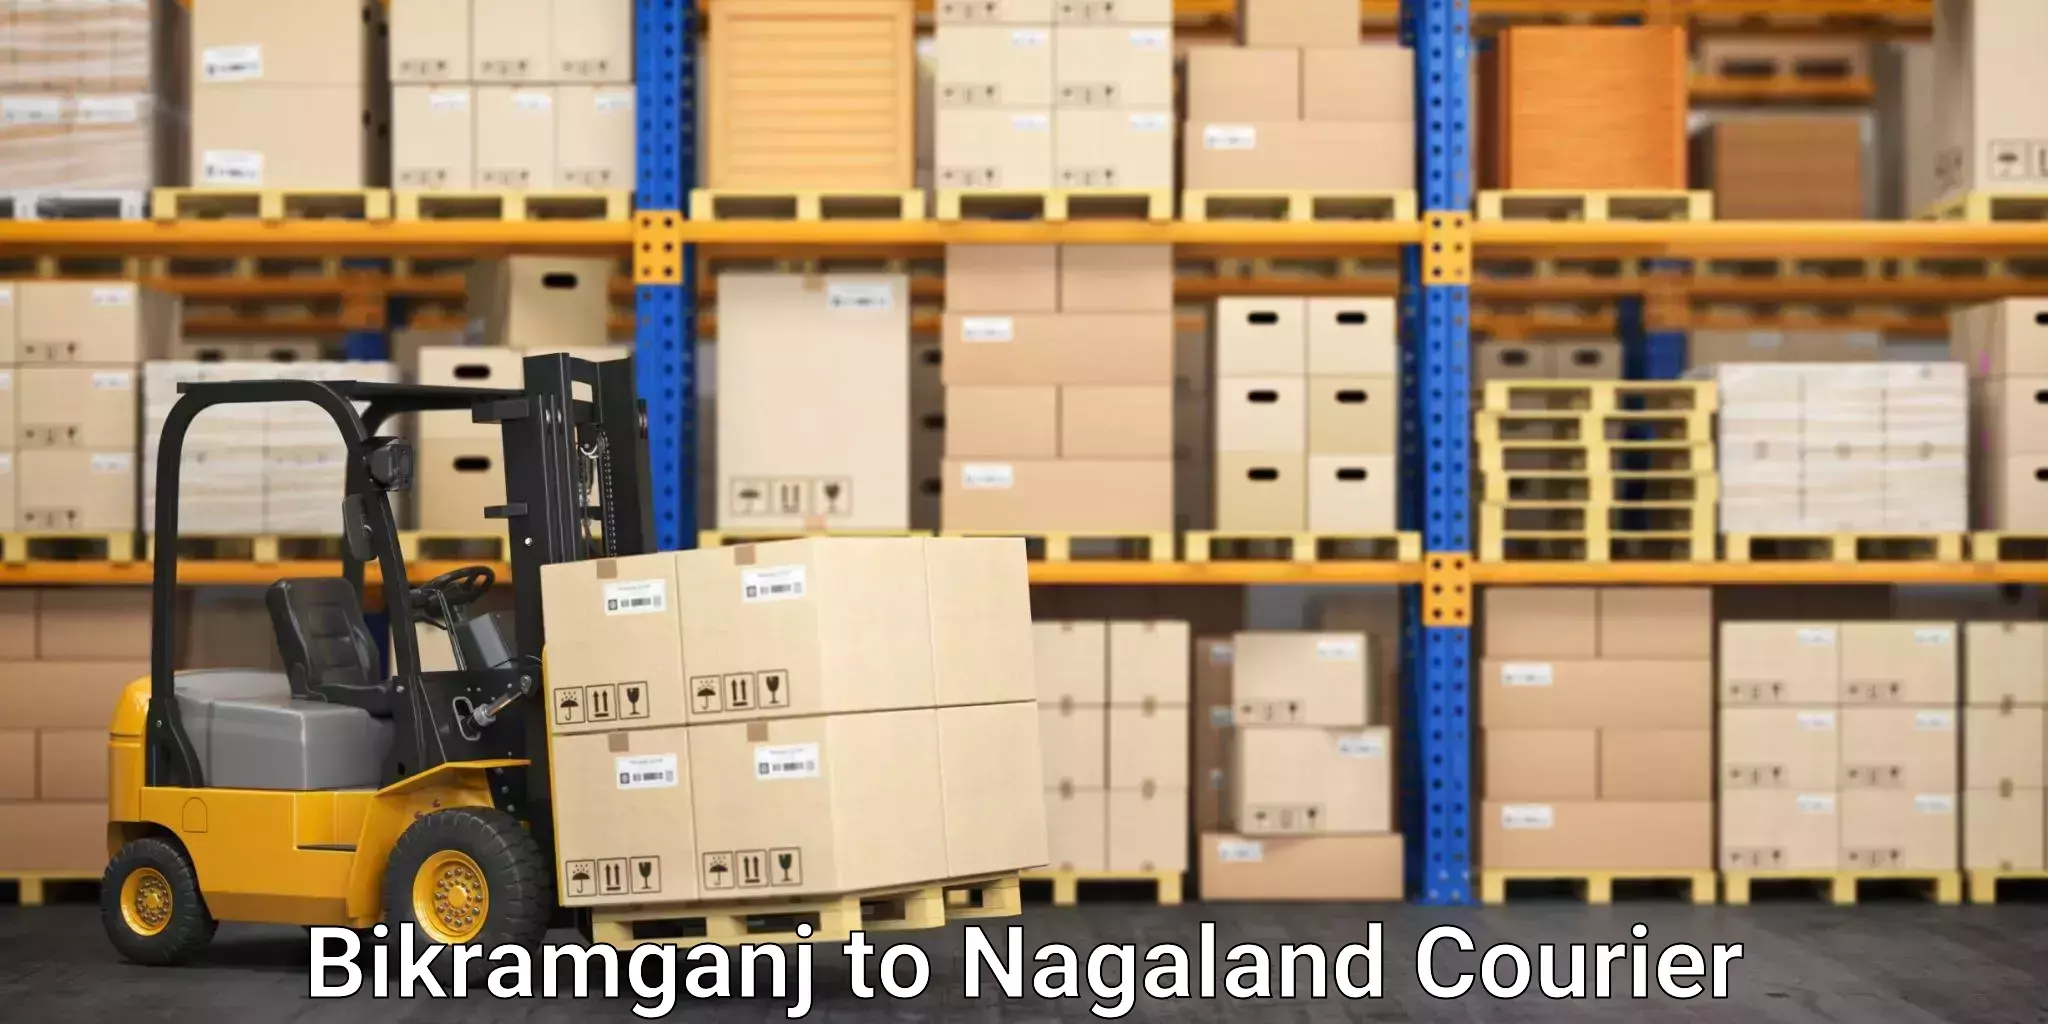 Furniture moving specialists Bikramganj to Nagaland